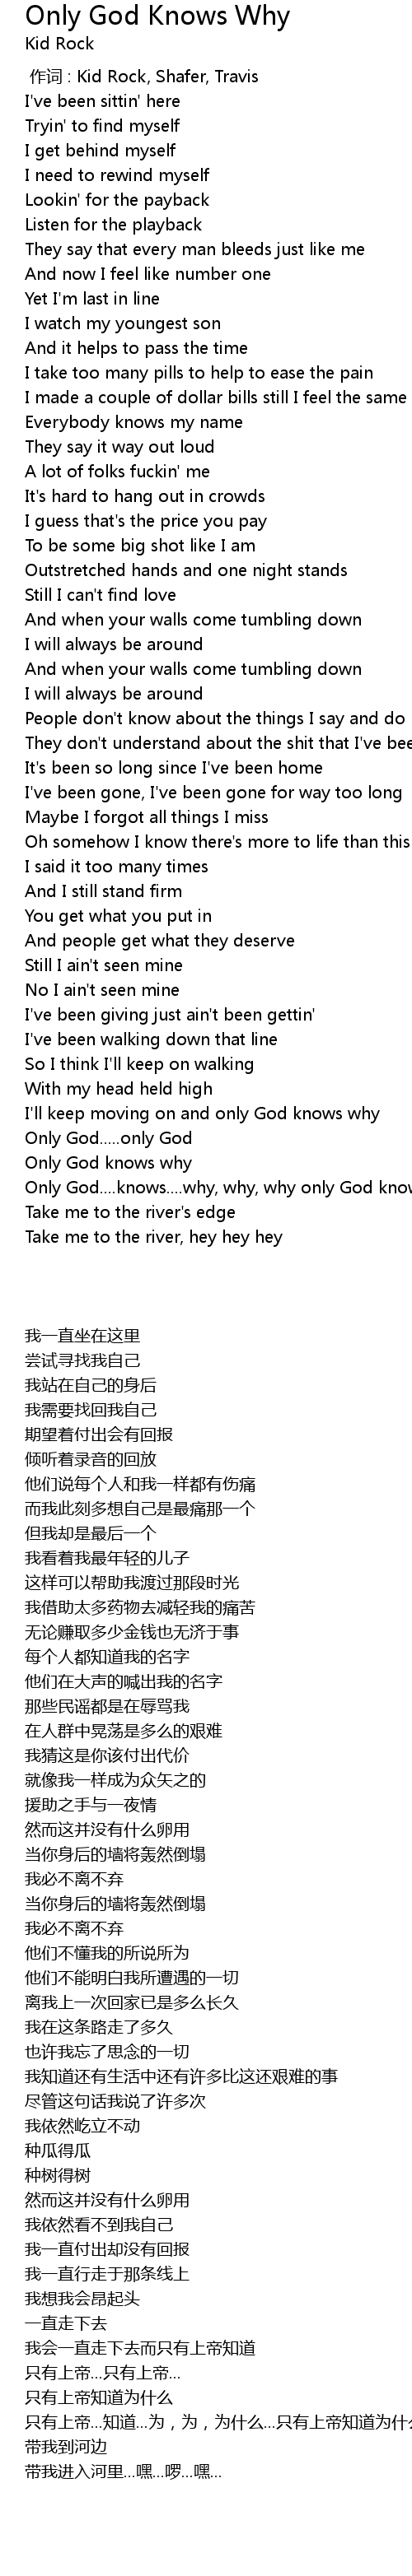 Only God Knows Why Lyrics Follow Lyrics